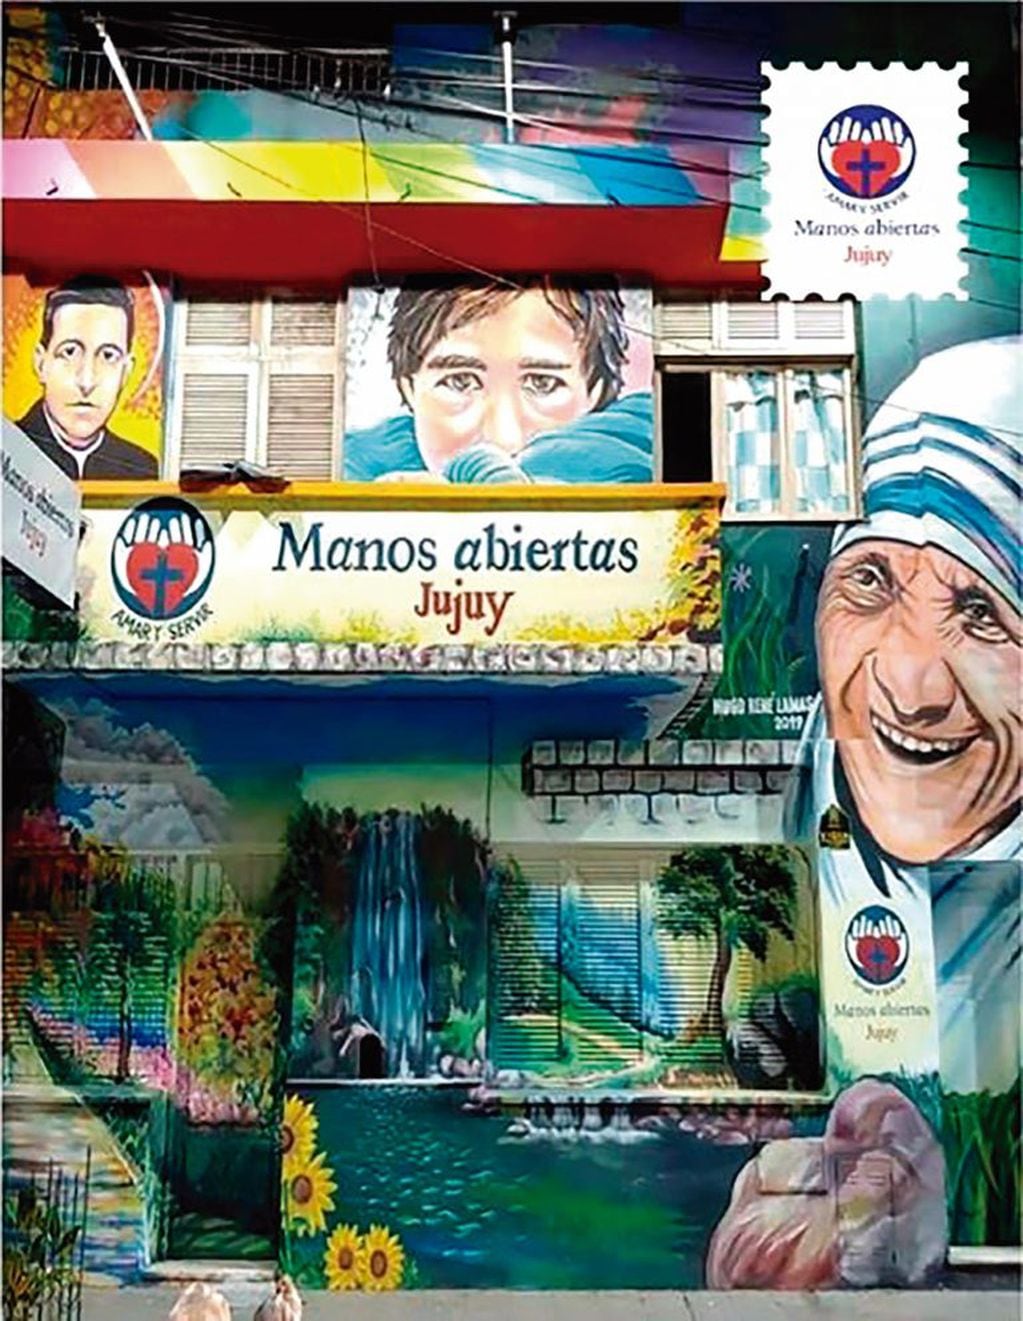 La Hospedería "San José" de la fundación Manos Abiertas Jujuy, en calle San Martín 127 de esta capital. El edificio se destaca en la ciudad por el artístico mural pintado en el frente.